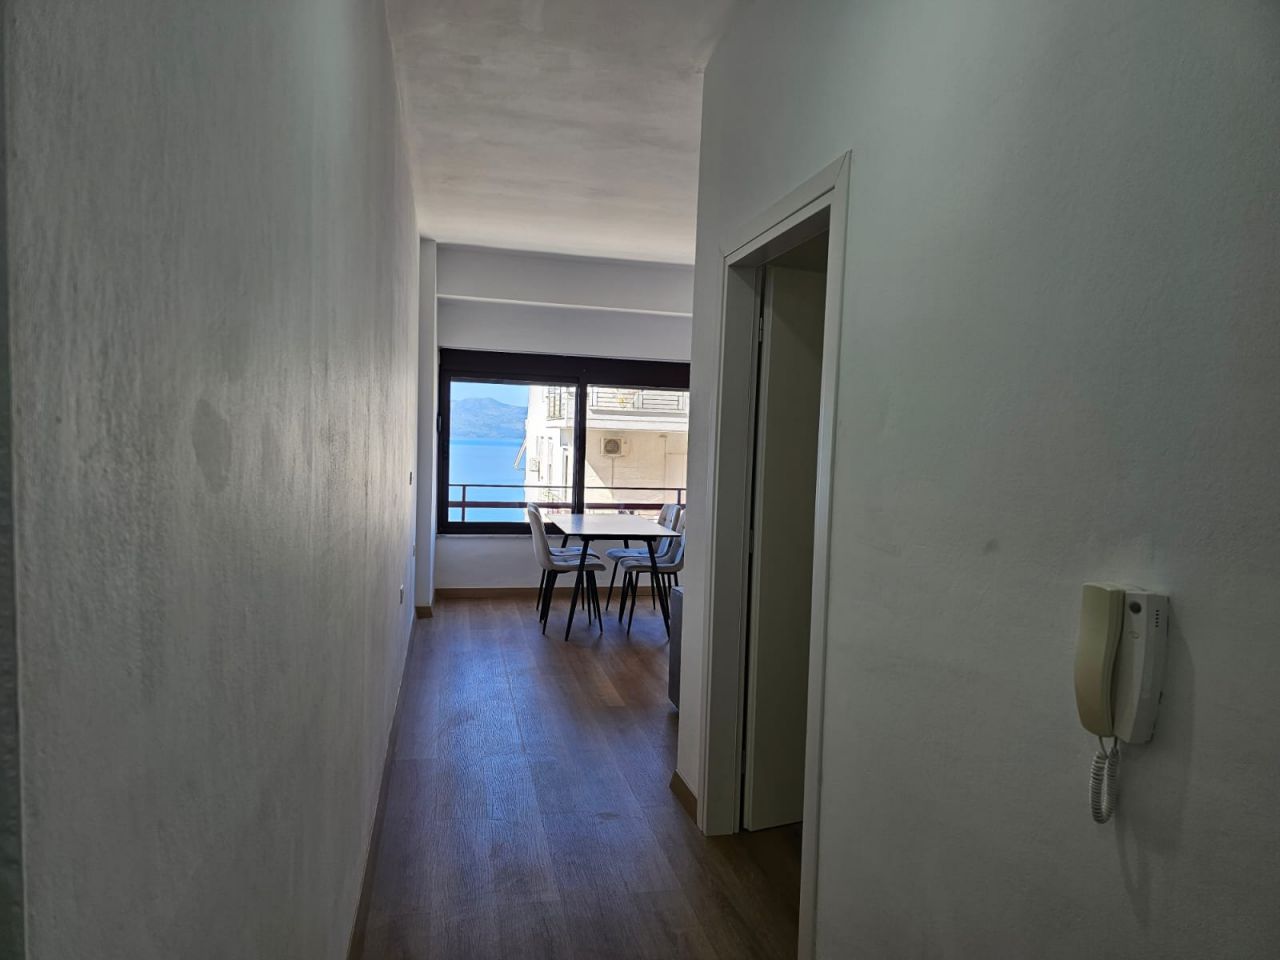 Apartment Mit Einem Schlafzimmer Zum Verkauf In Saranda Albanien In Einer Gut Organisierten Nachbarschaft Mit Herrlichem Meerblick